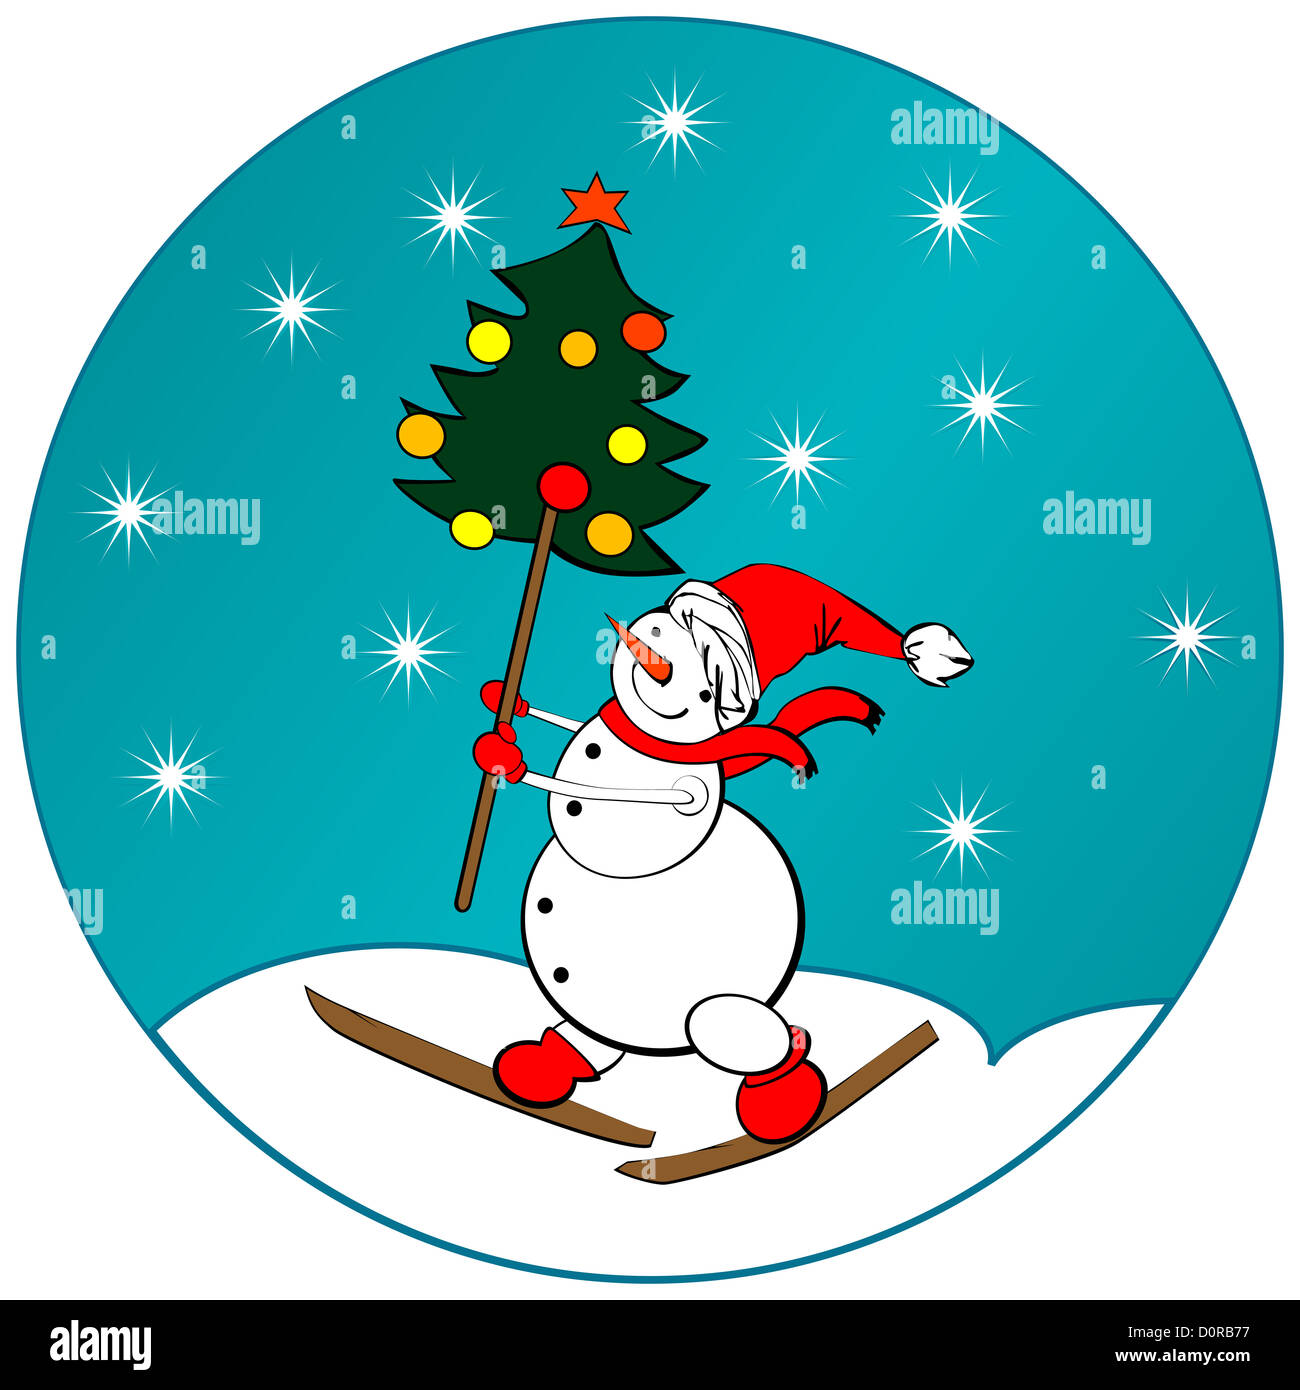 snow-man-sticker-stock-photo-alamy